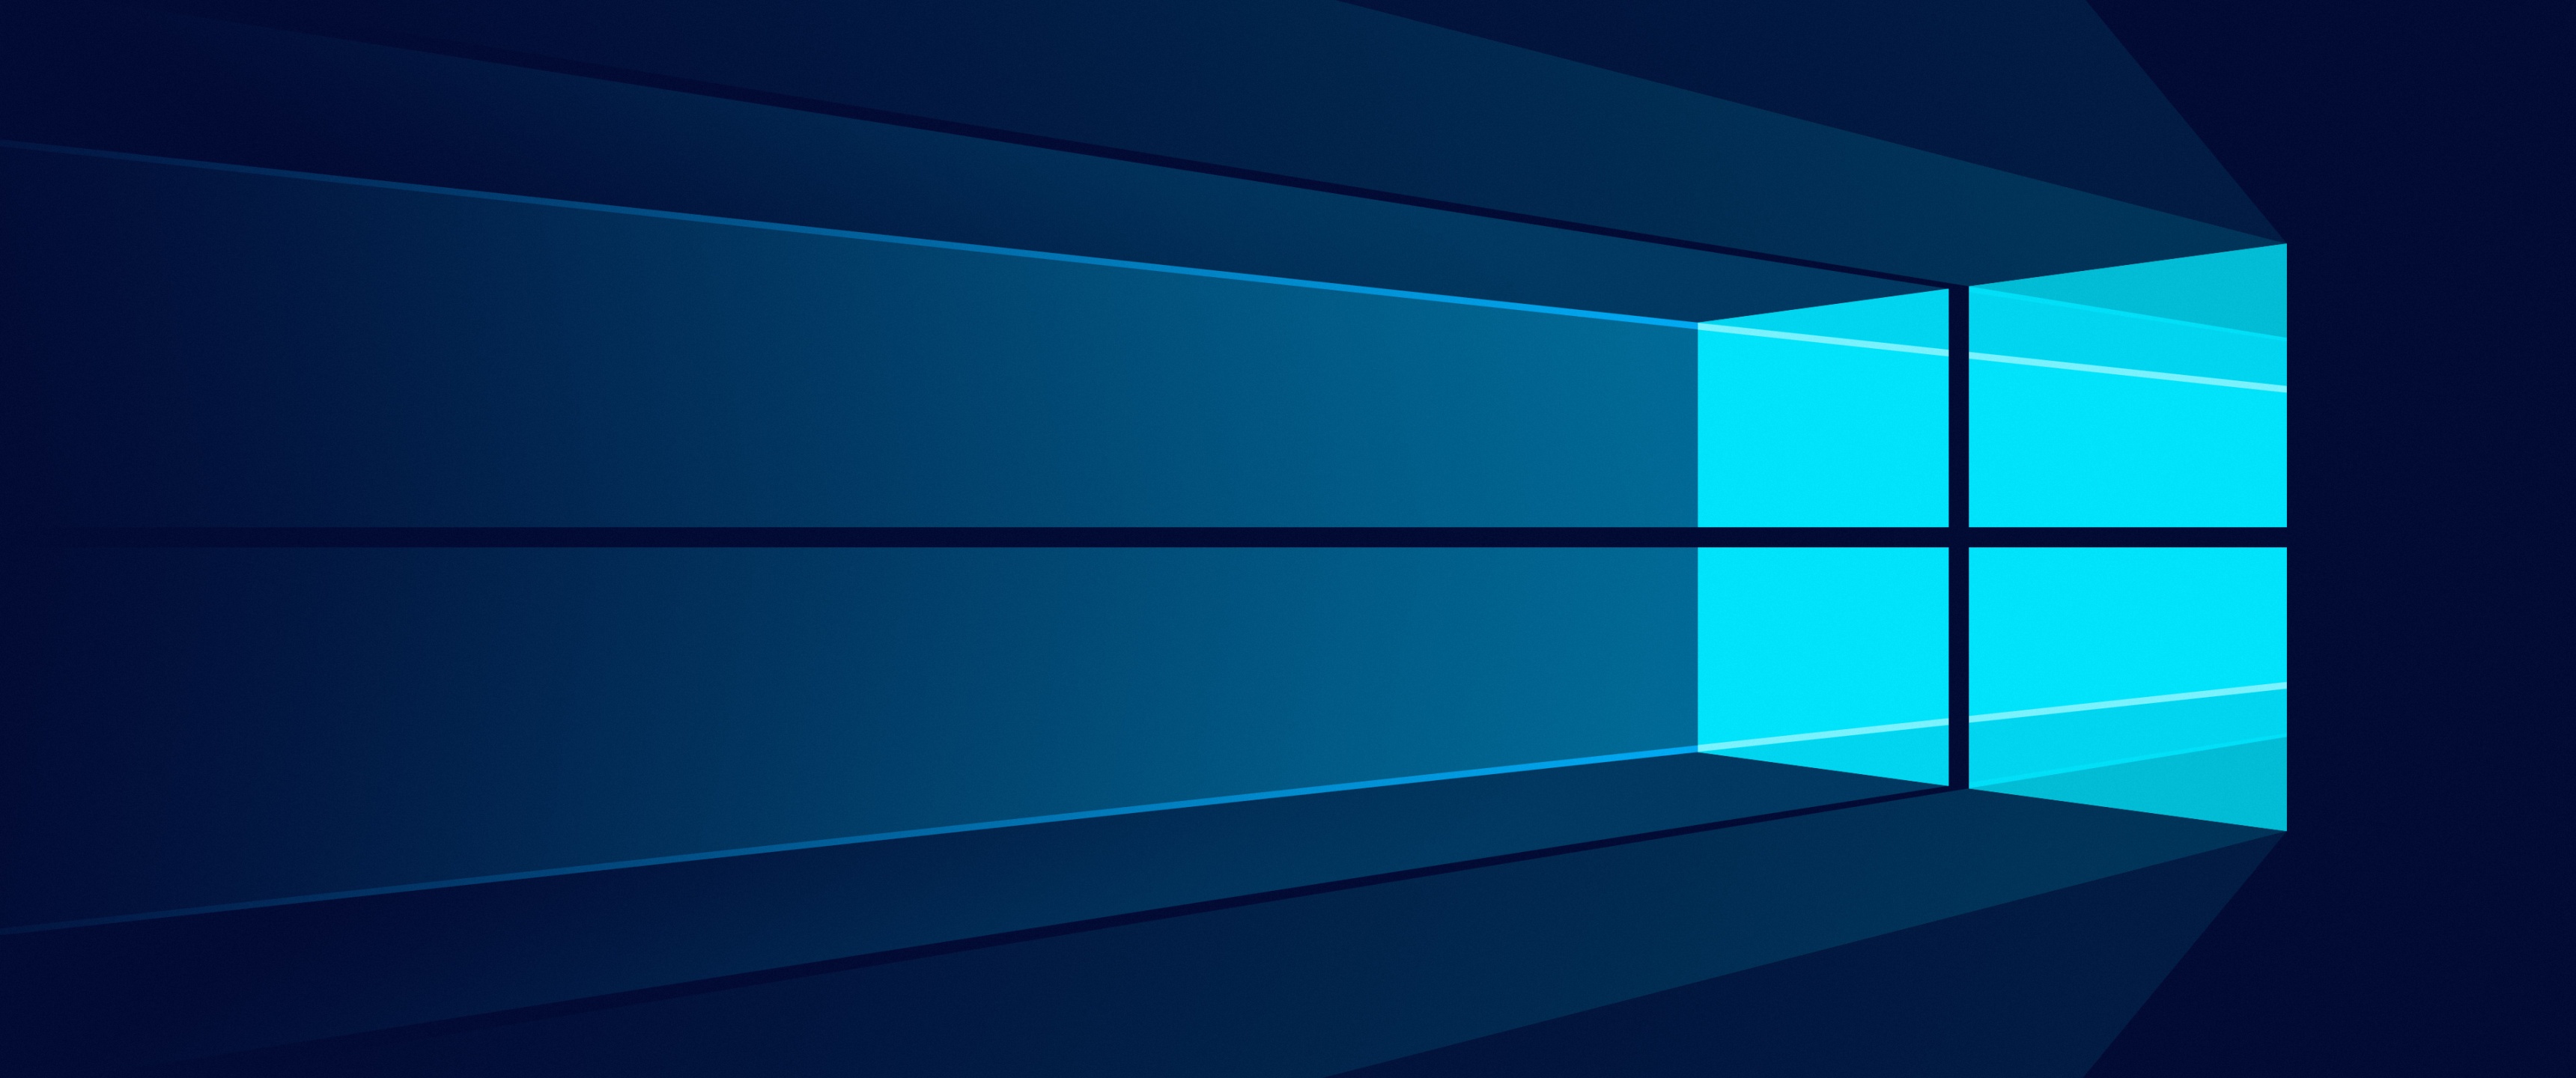 Hình nền Windows 10 4k mang đến sự tinh tế và chuyên nghiệp nhờ công nghệ Microsoft. Hãy cùng chiêm ngưỡng sức mạnh và đẳng cấp vượt trội của chúng ngay trên màn hình máy tính của bạn.